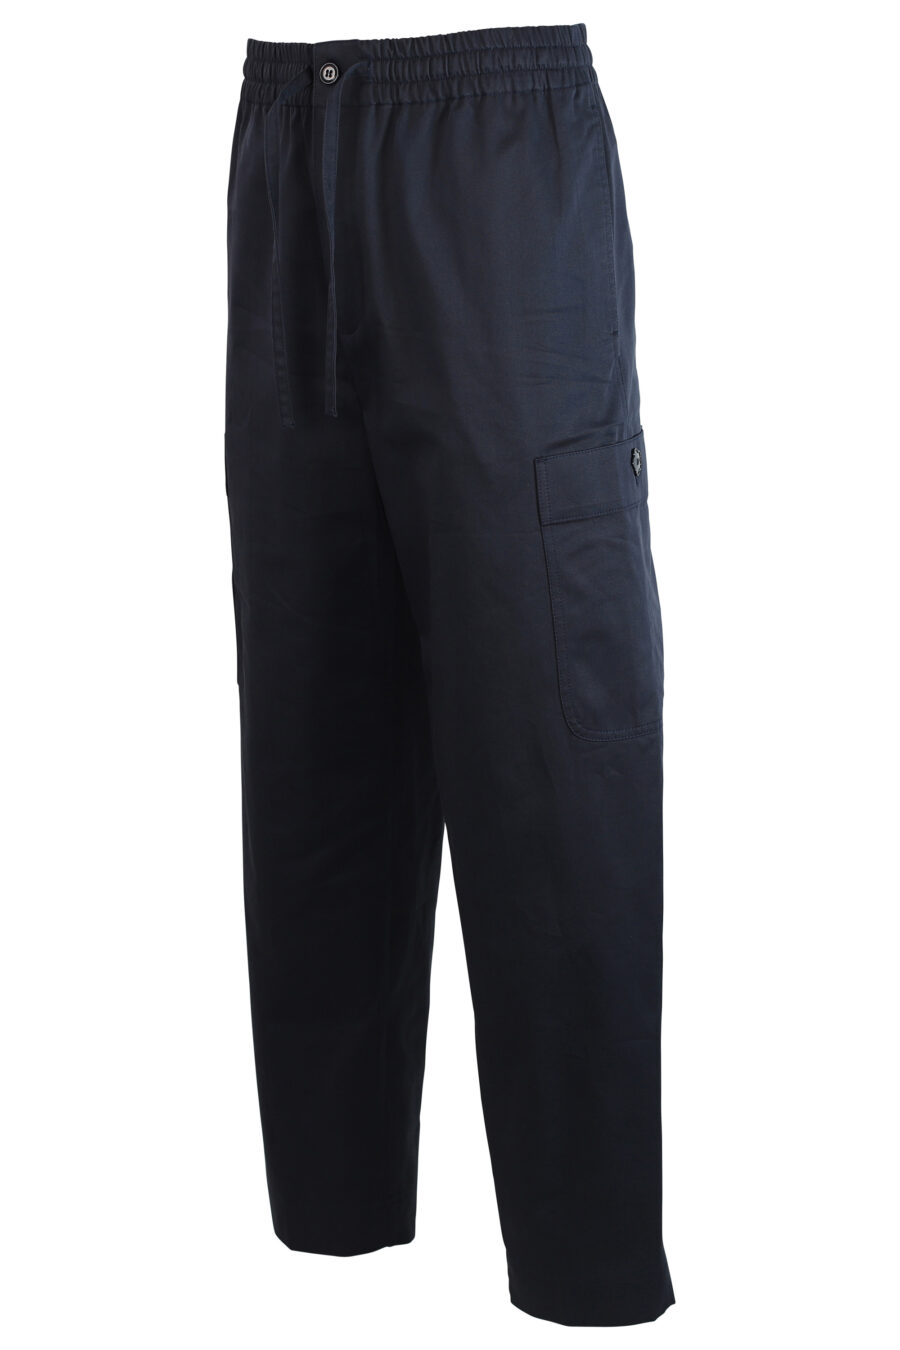 Pantalón azul con bolsillo laterales y logo - 3612230409323 2